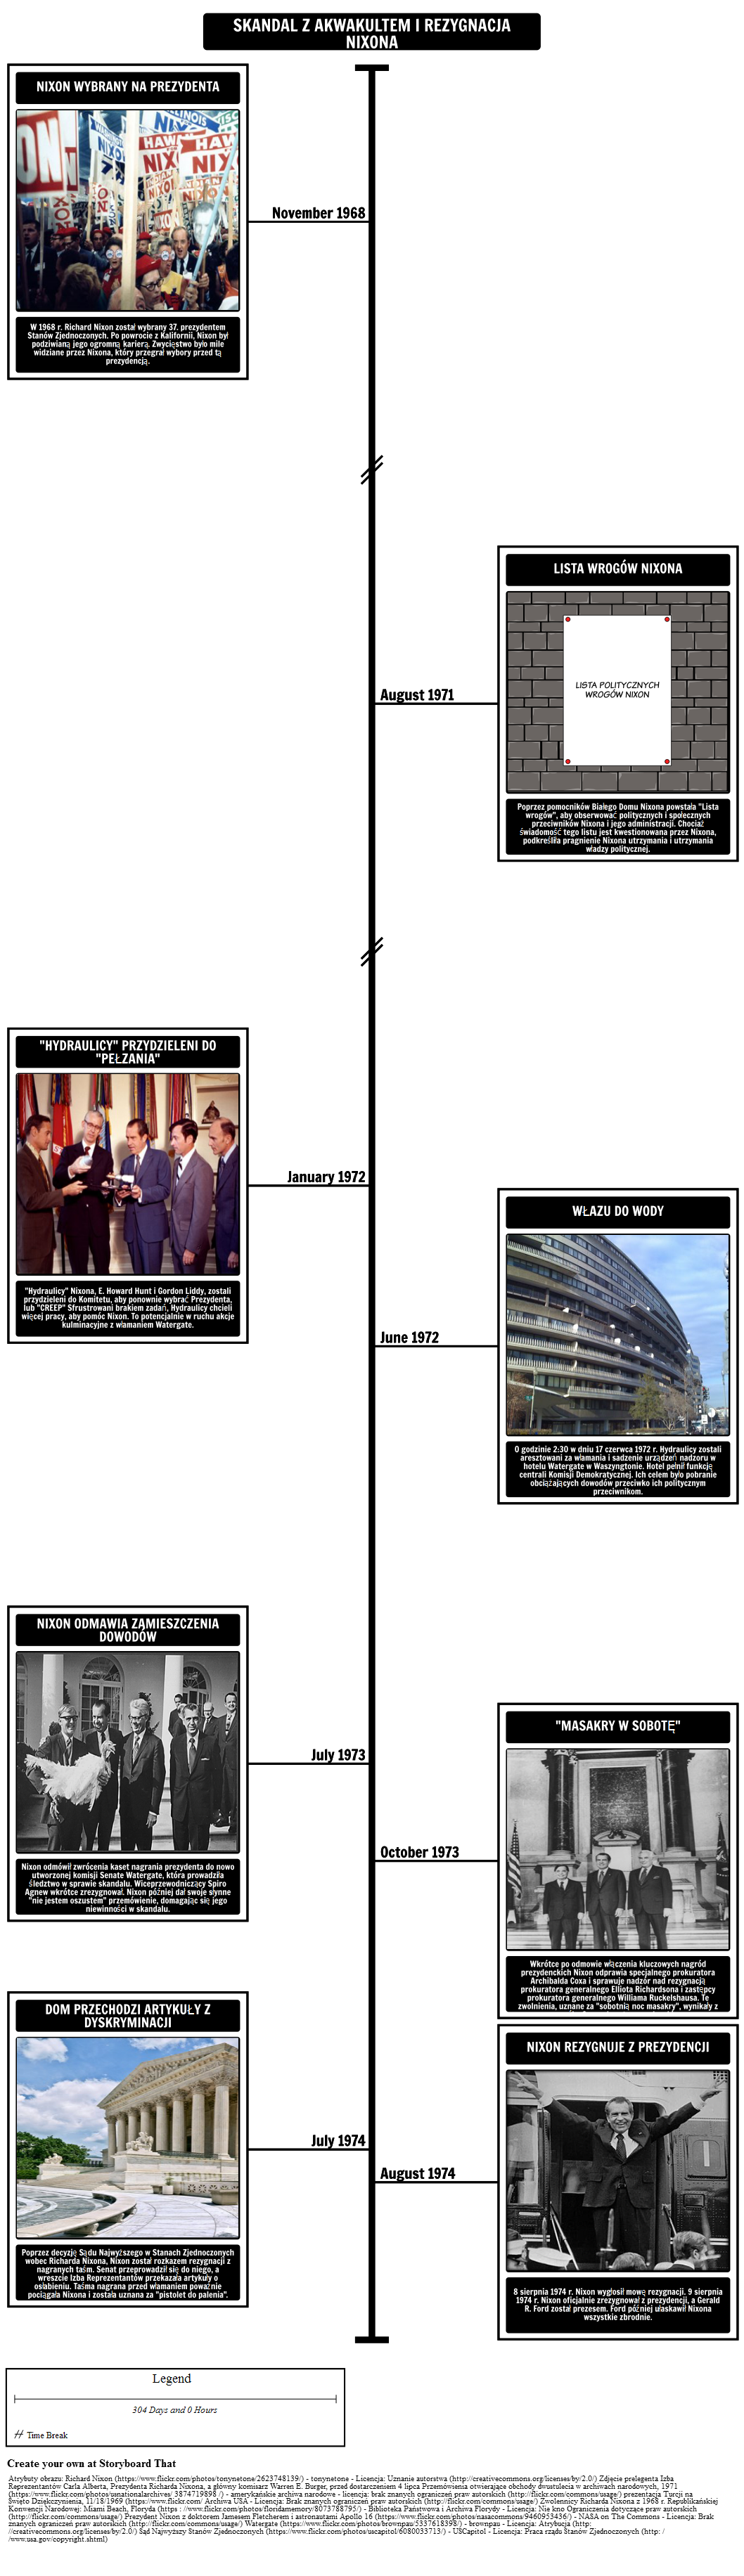 The Watergate Scandal Timeline i Rezygnacja Nixona